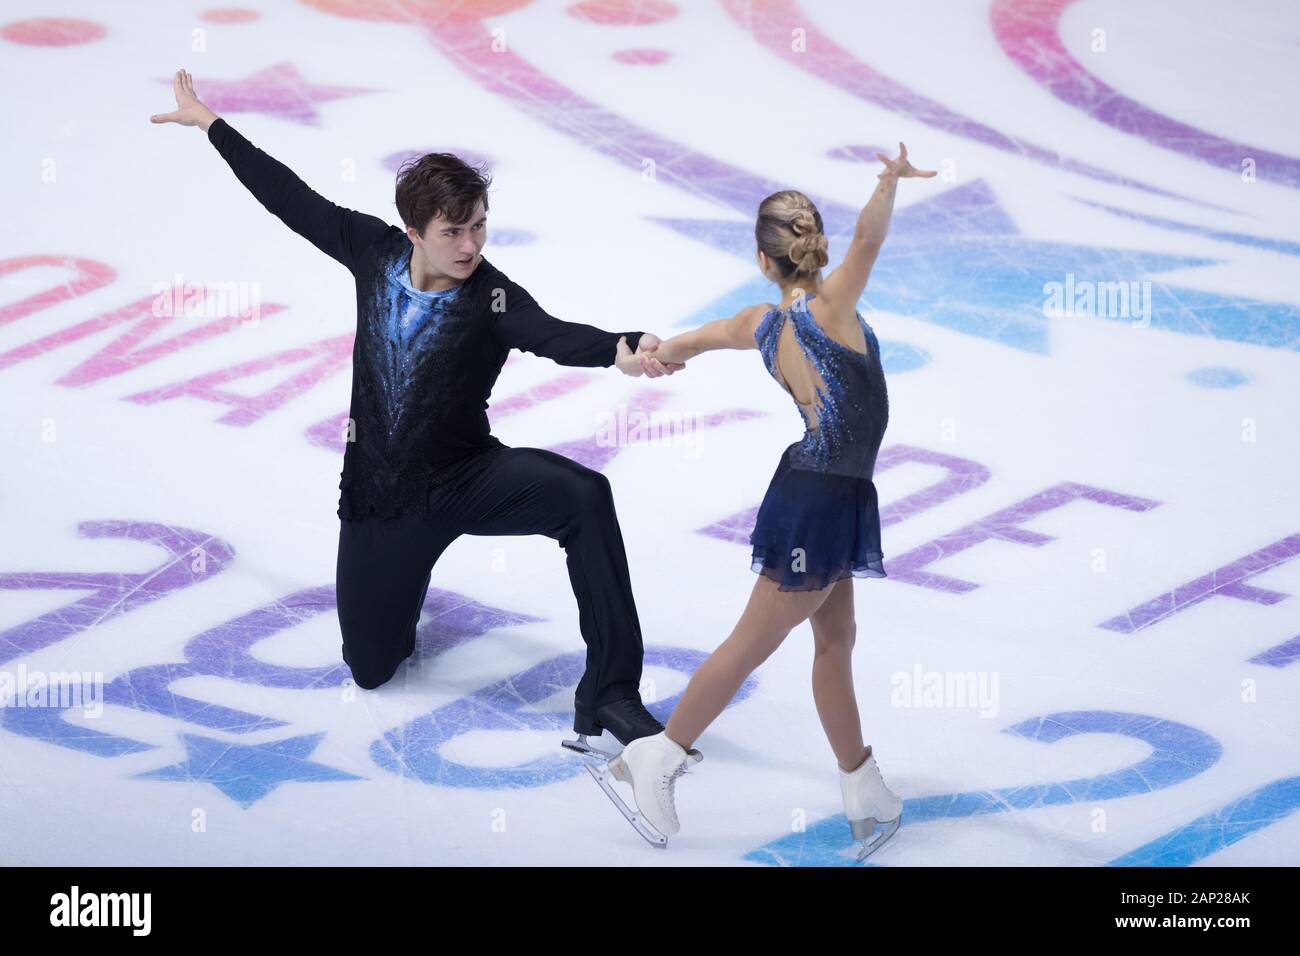 Daria Pavliuchenko and Denis Khodykin from Russia compete in the pairs short program during day 1 of the ISU Grand Prix of Figure Skating - Internatio Stock Photo